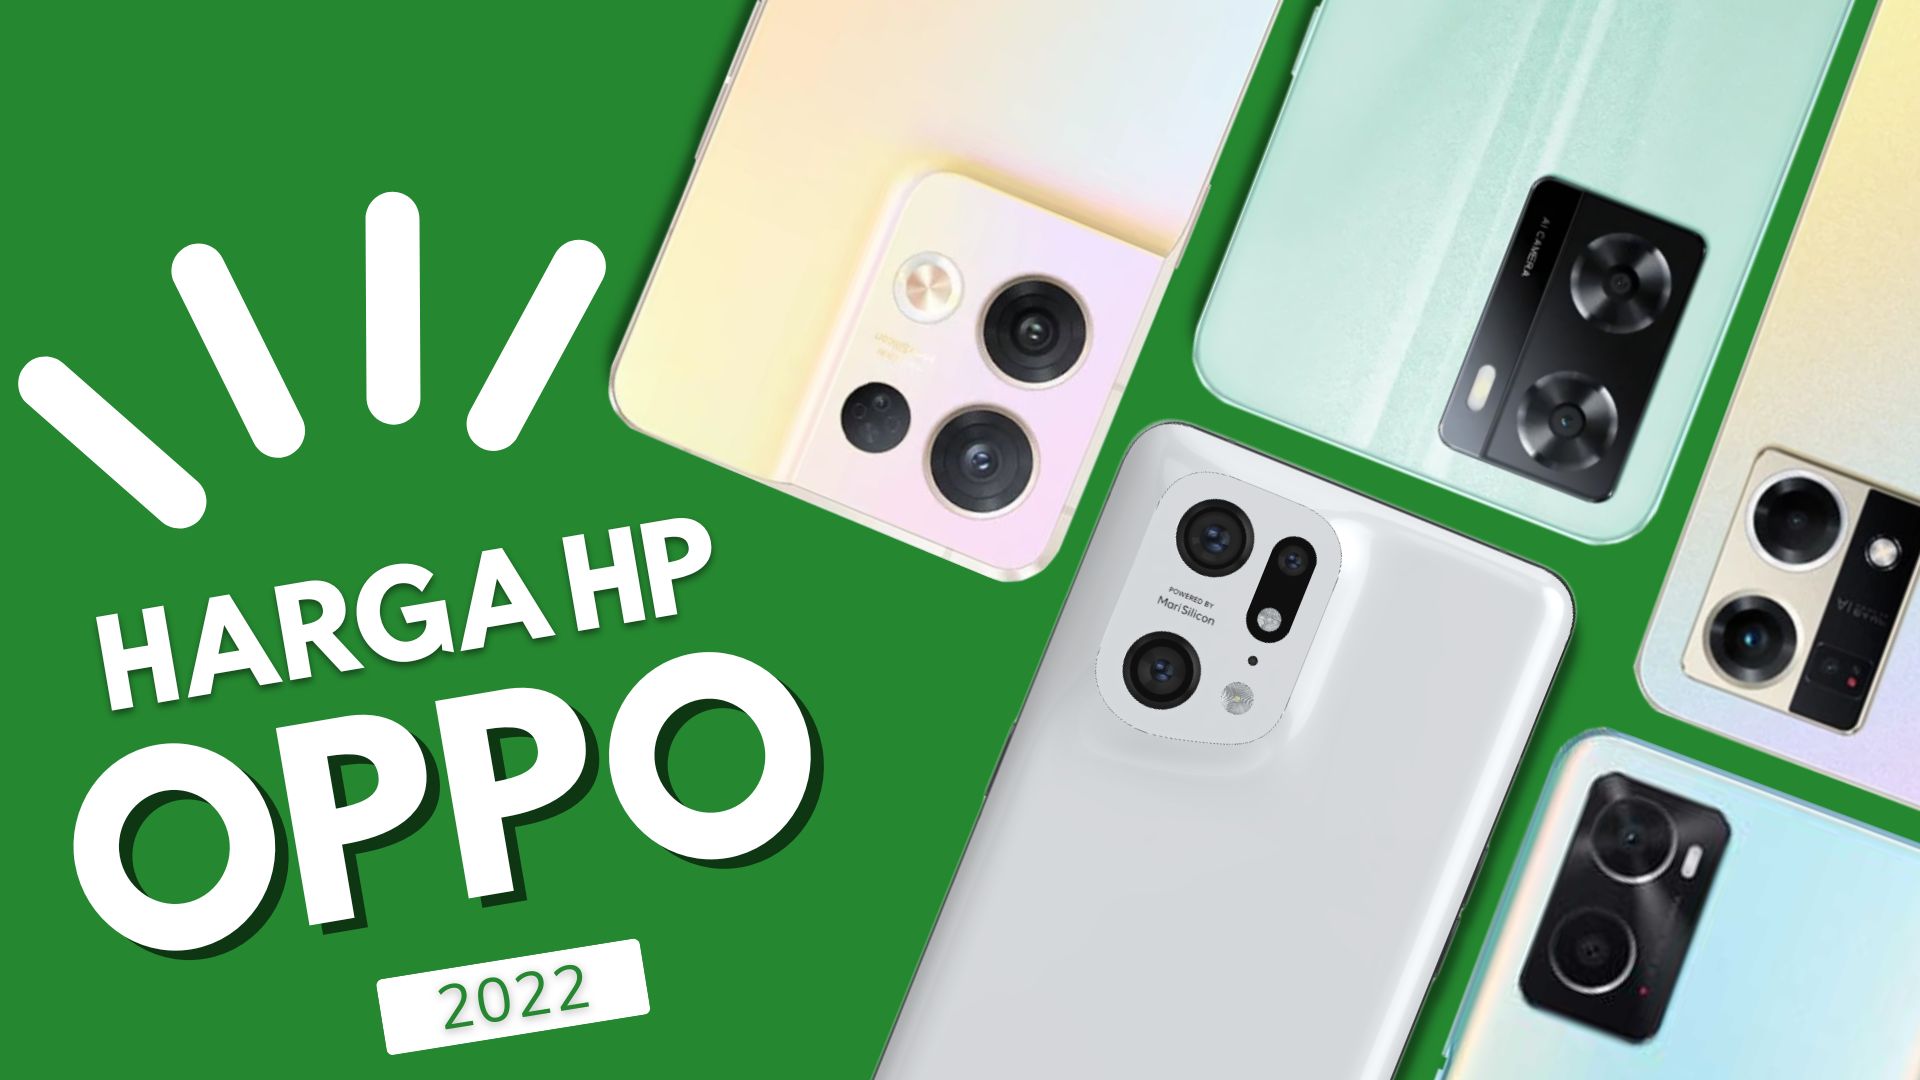 Daftar Harga HP Oppo Terbaru 2022